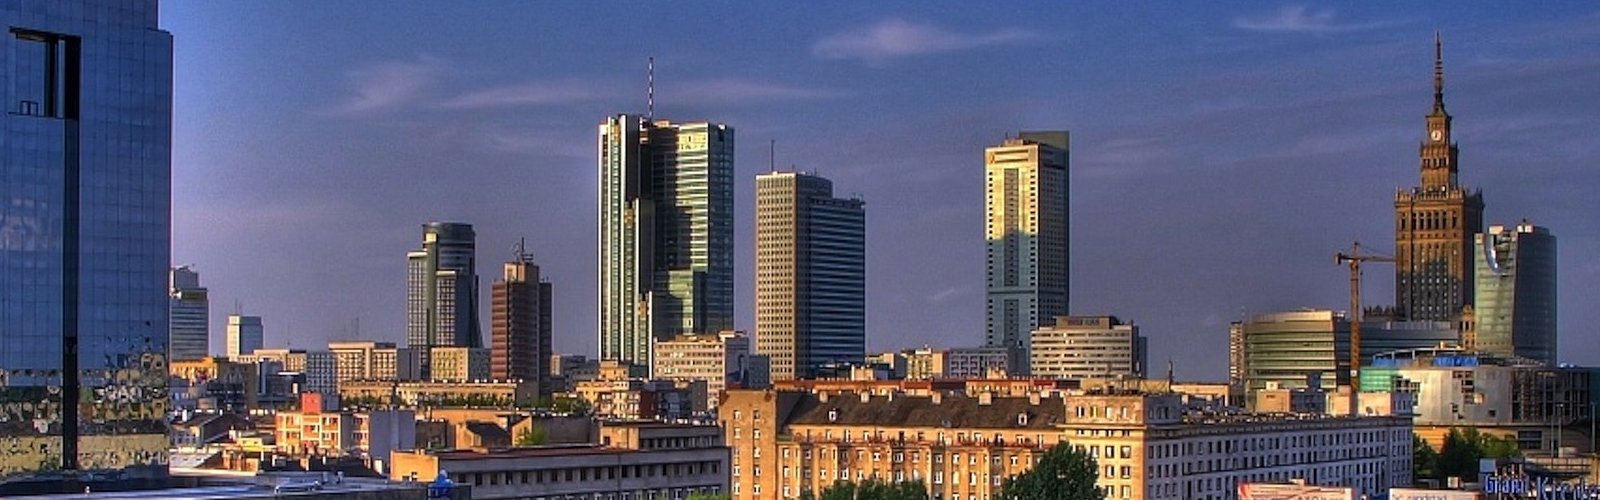 Warsaw downtown